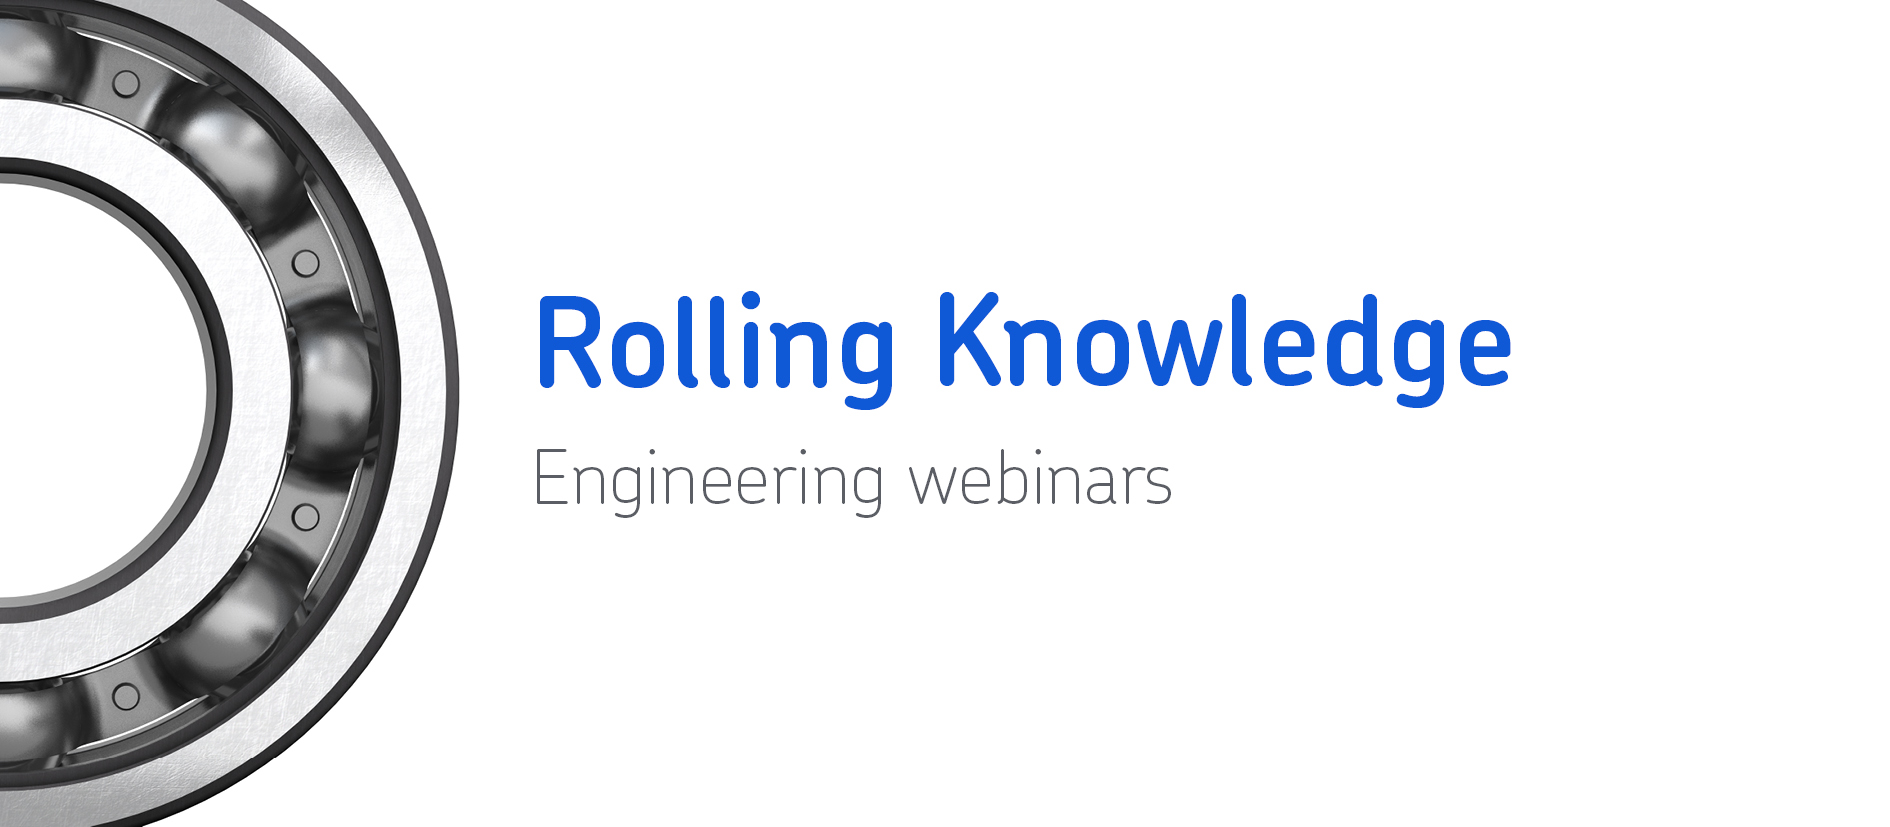 SKF Rolling Knowledge webinars